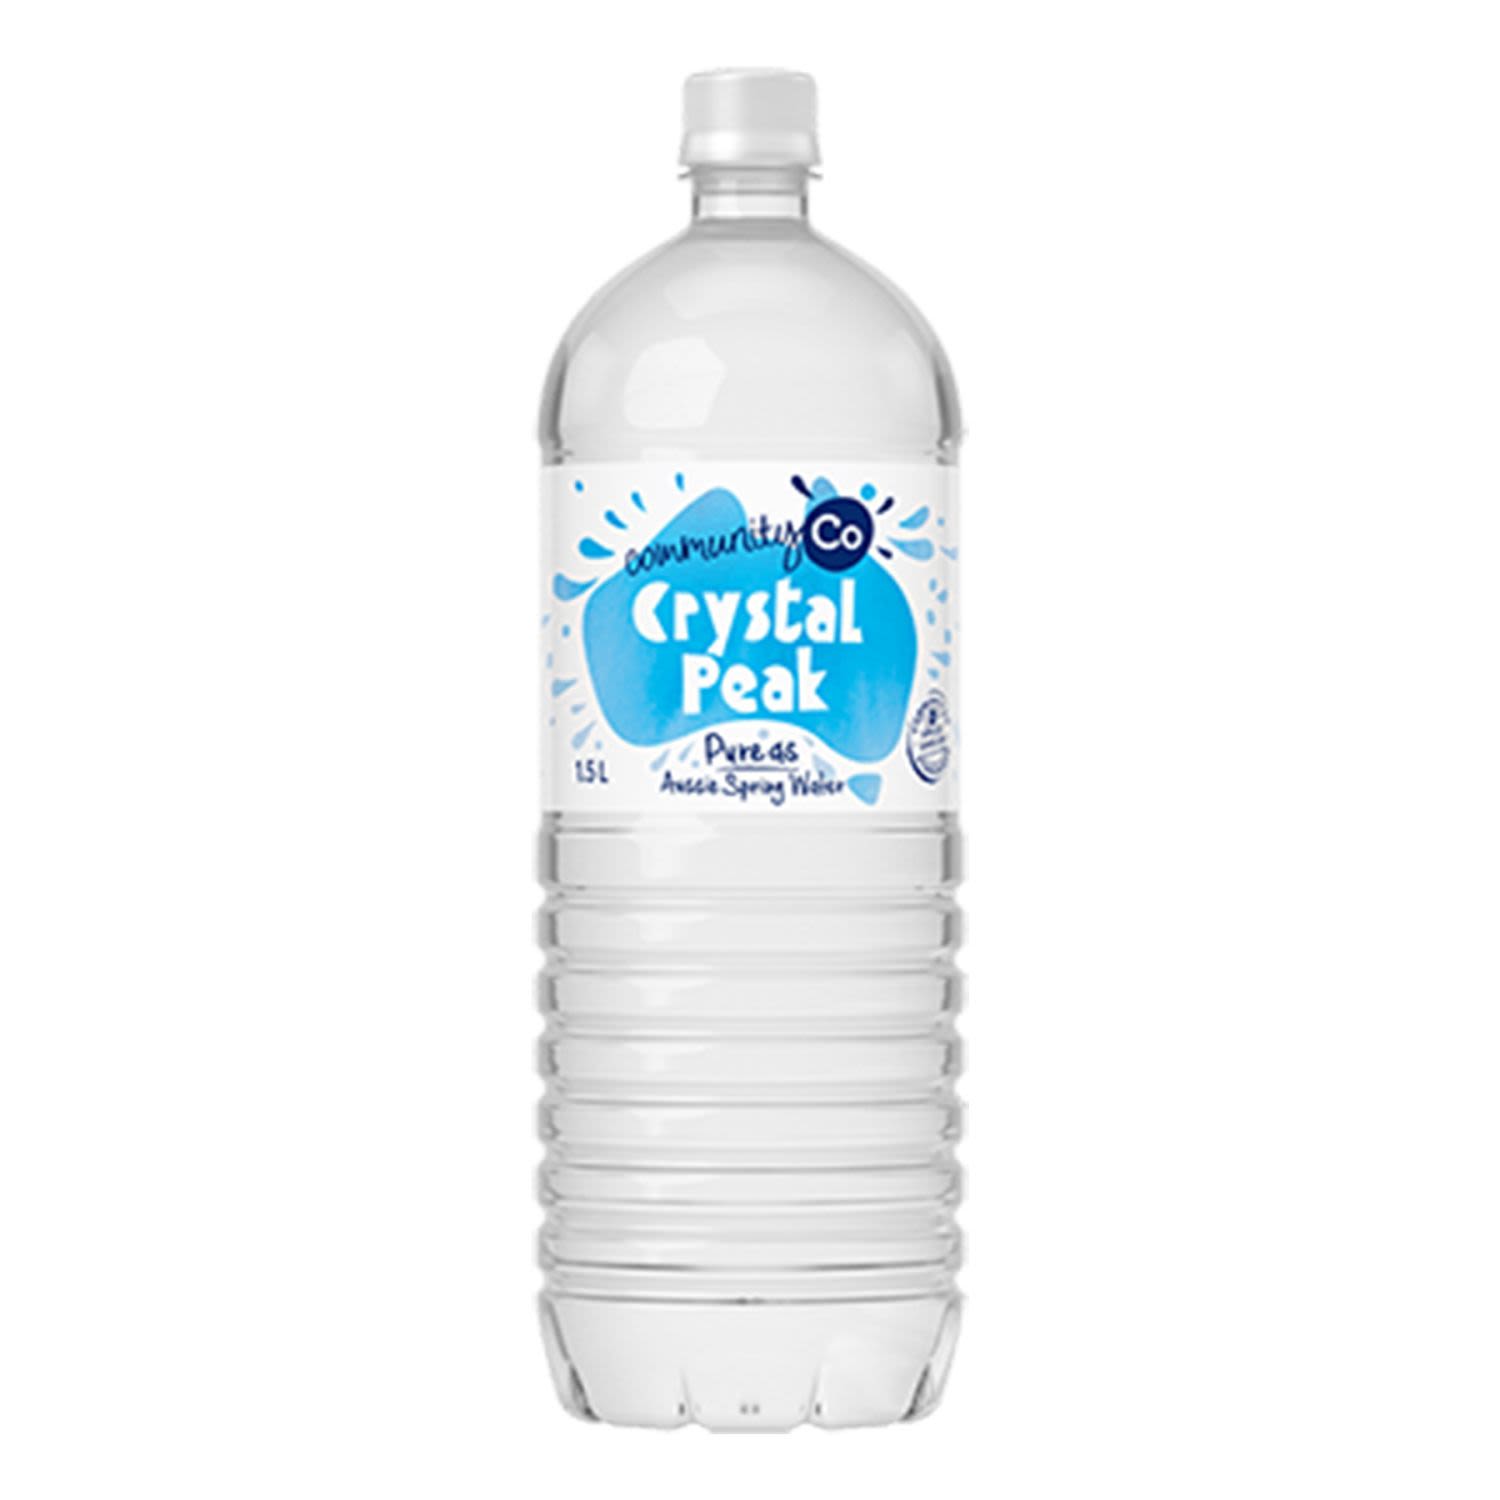 Community Co Crystal Peak Spring Water, 1.5 Litre